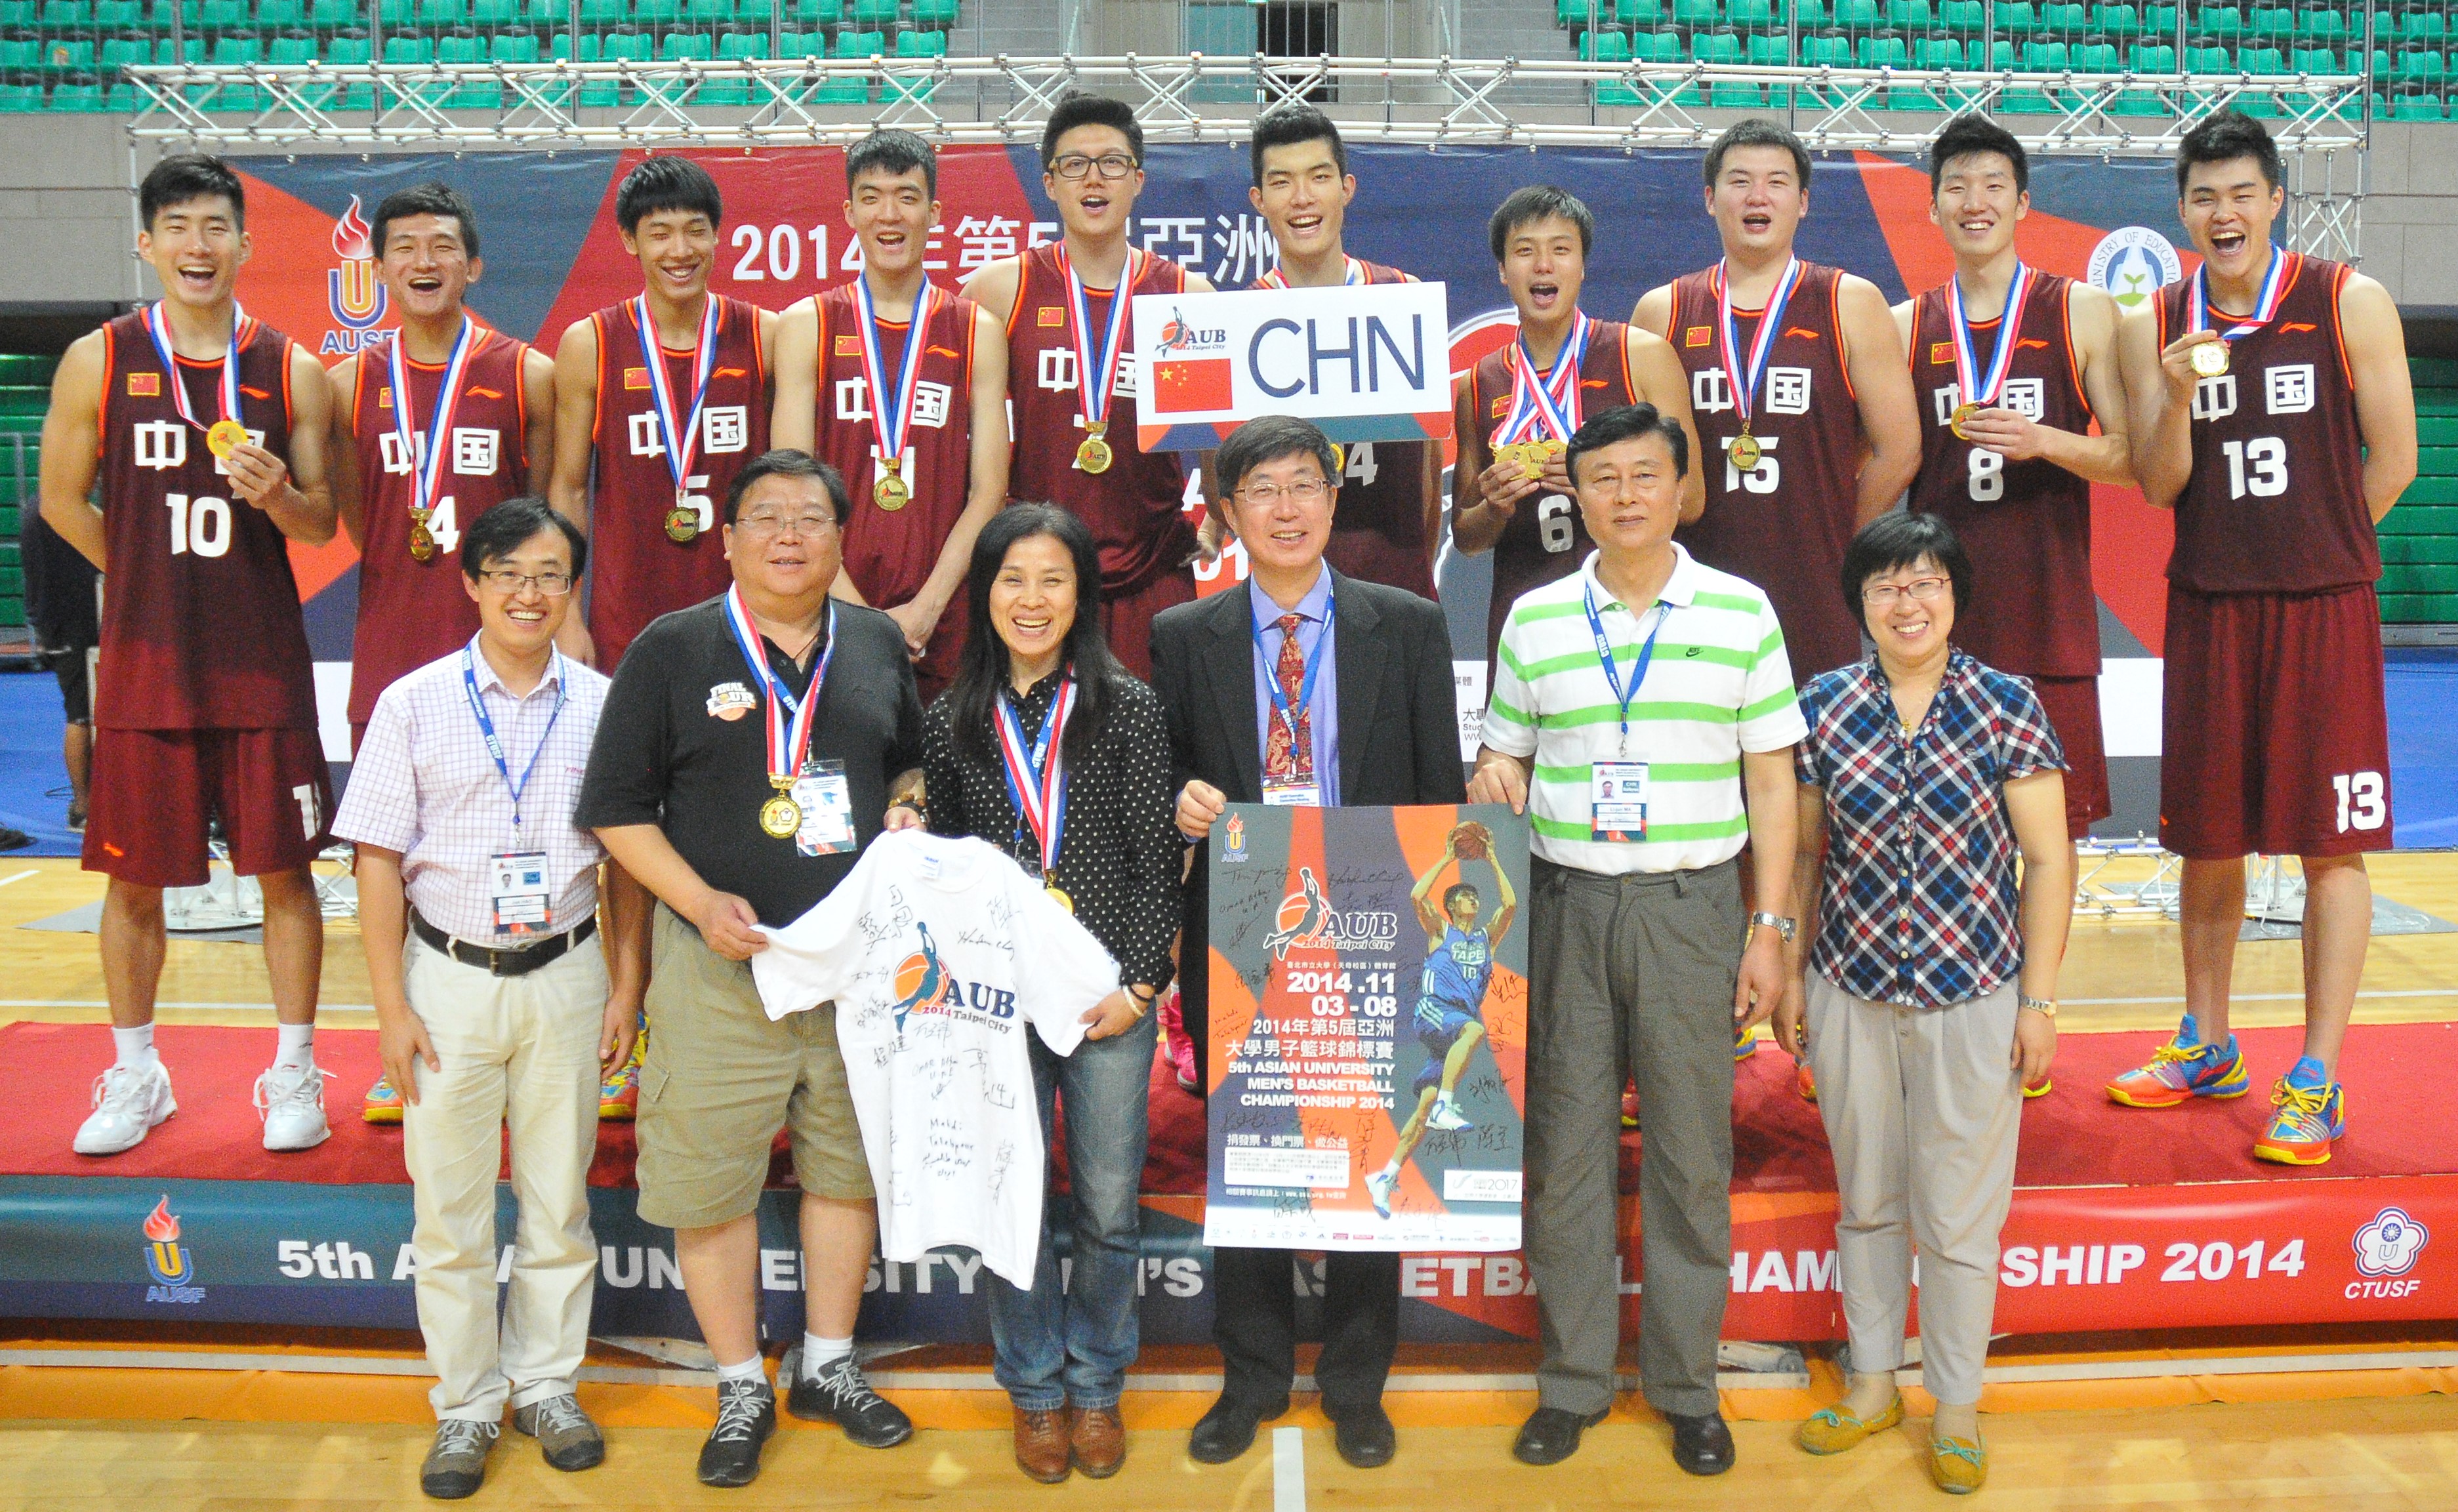 关于北京市中学生篮球冠军联赛的信息